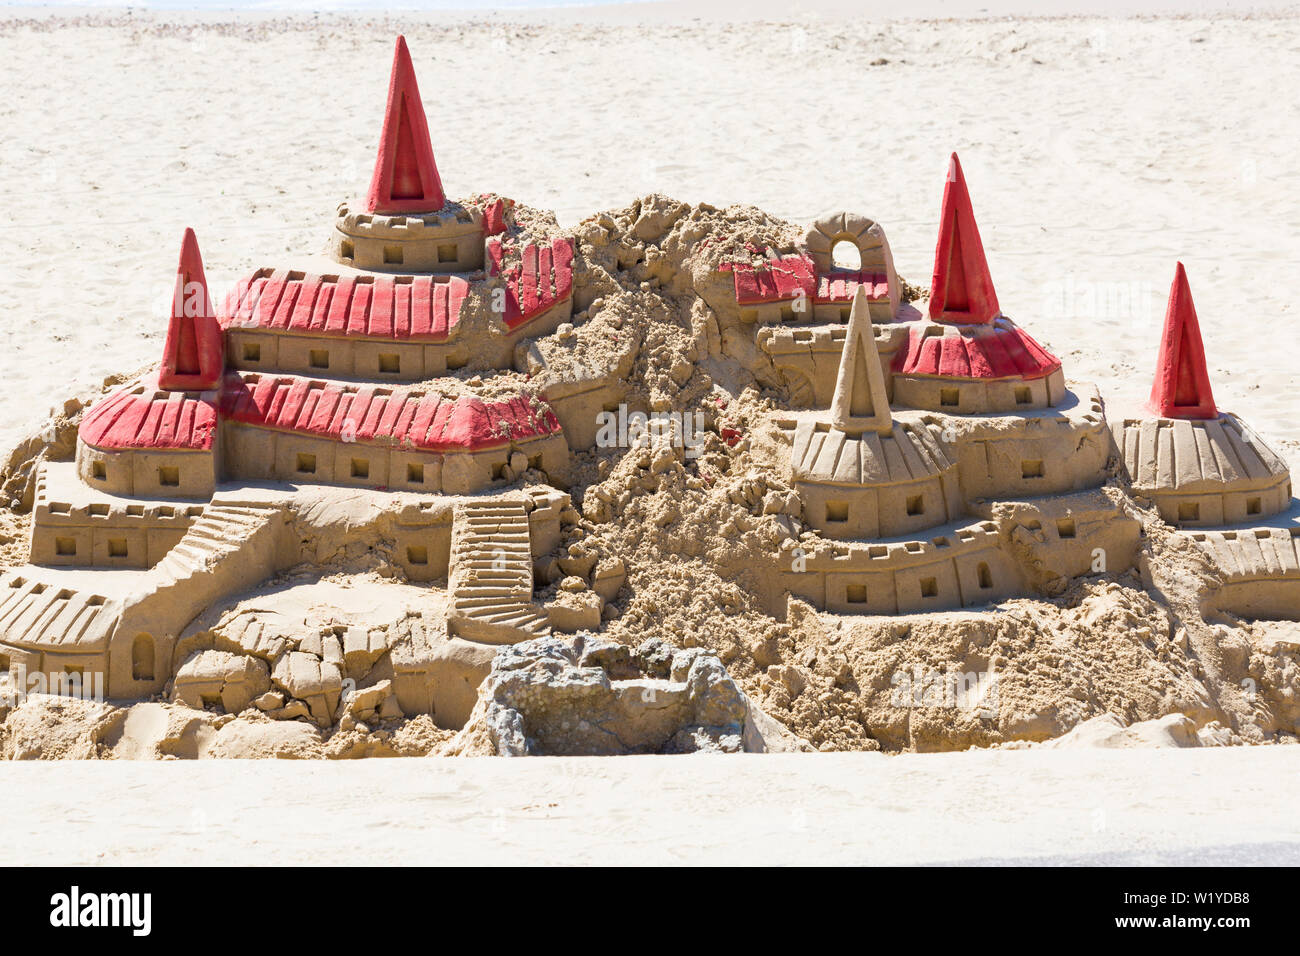 Elaborata scultura del castello di sabbia sulla spiaggia di Durley Chine a Bournemouth, Dorset UK nel mese di luglio - Castello di Hogwarts da Harry Potter nella sabbia Foto Stock